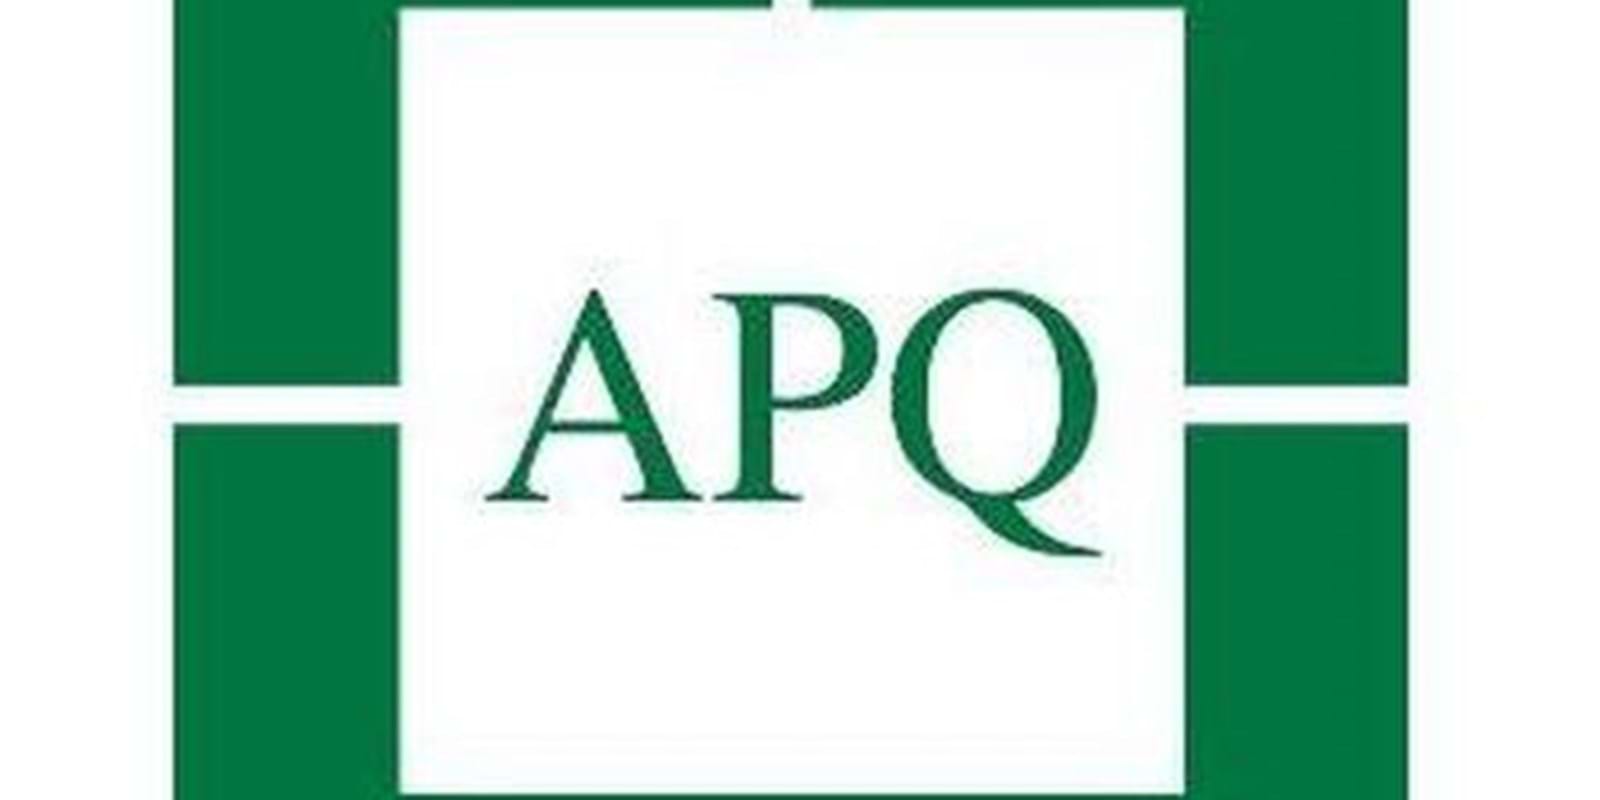 L'Association des Propriétaires du Québec (APQ) répond à la demande du RCLALQ qui souhaite un registre des baux